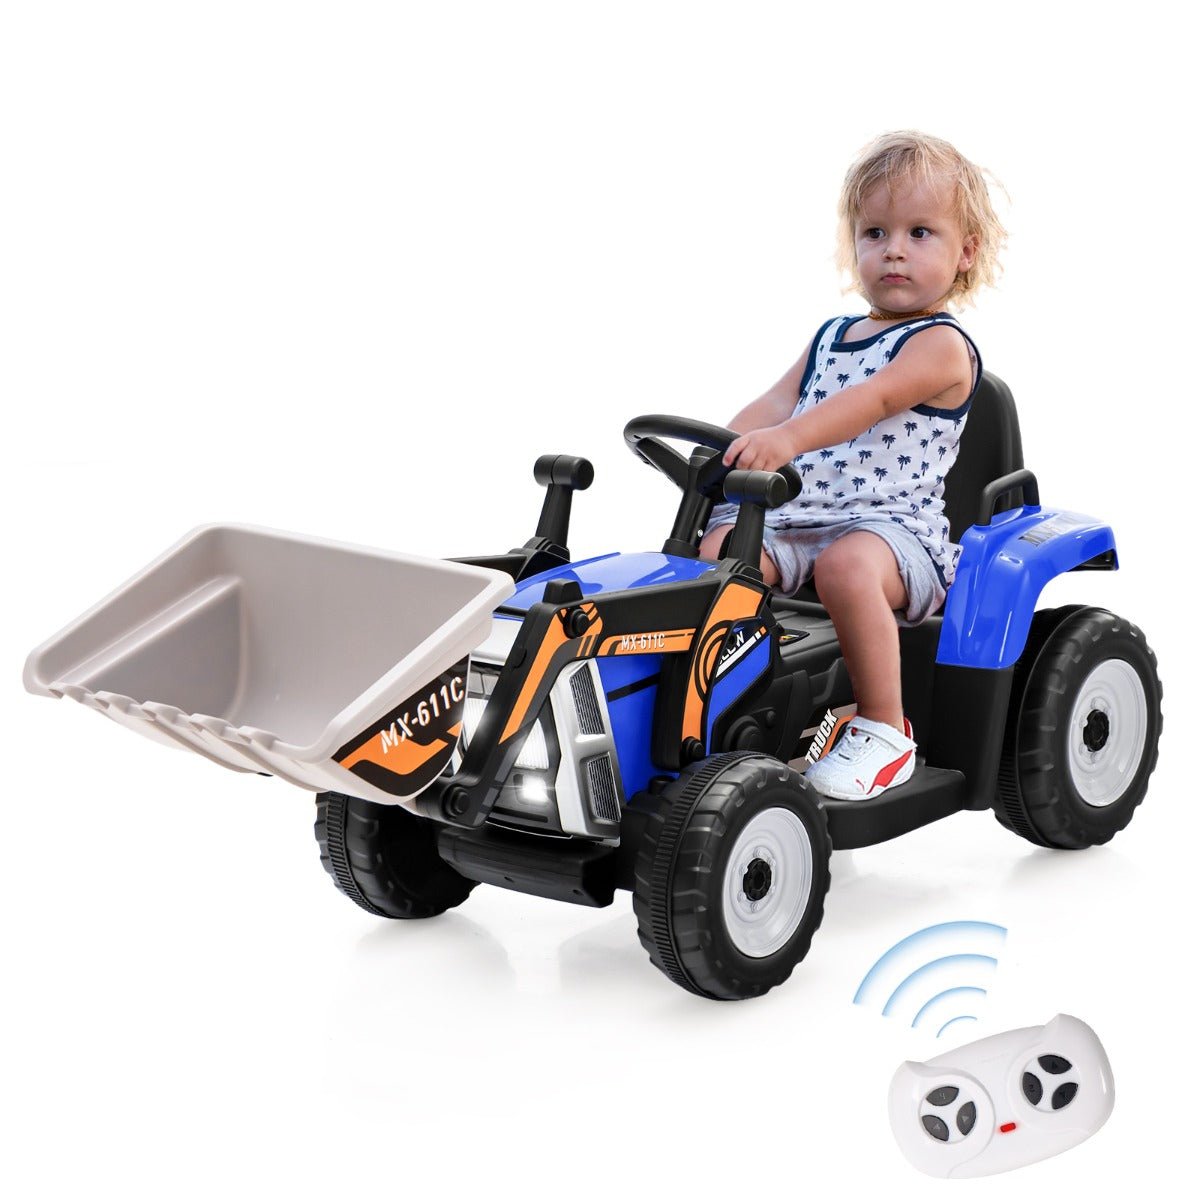 Little Builder's Dream: 12V Kids Excavator Ride-On Toy, Adjustable Arm, Blue